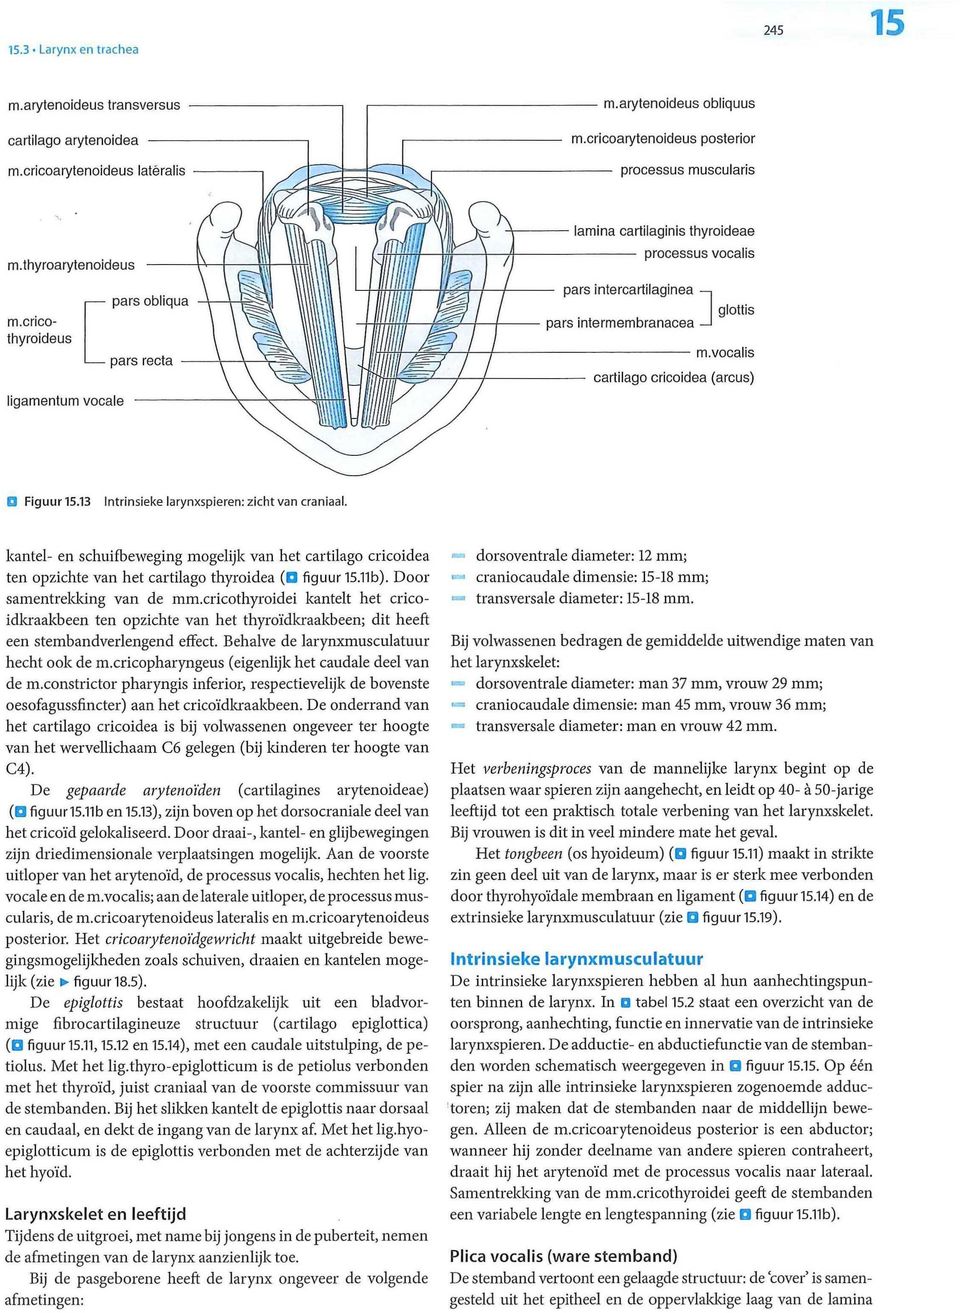 kantel- en schuifbeweging mogelijk van het cartilago cricoidea ten opzichte van het cartilago thyroidea figuur 15.11b). Door samentrekking van de mm.